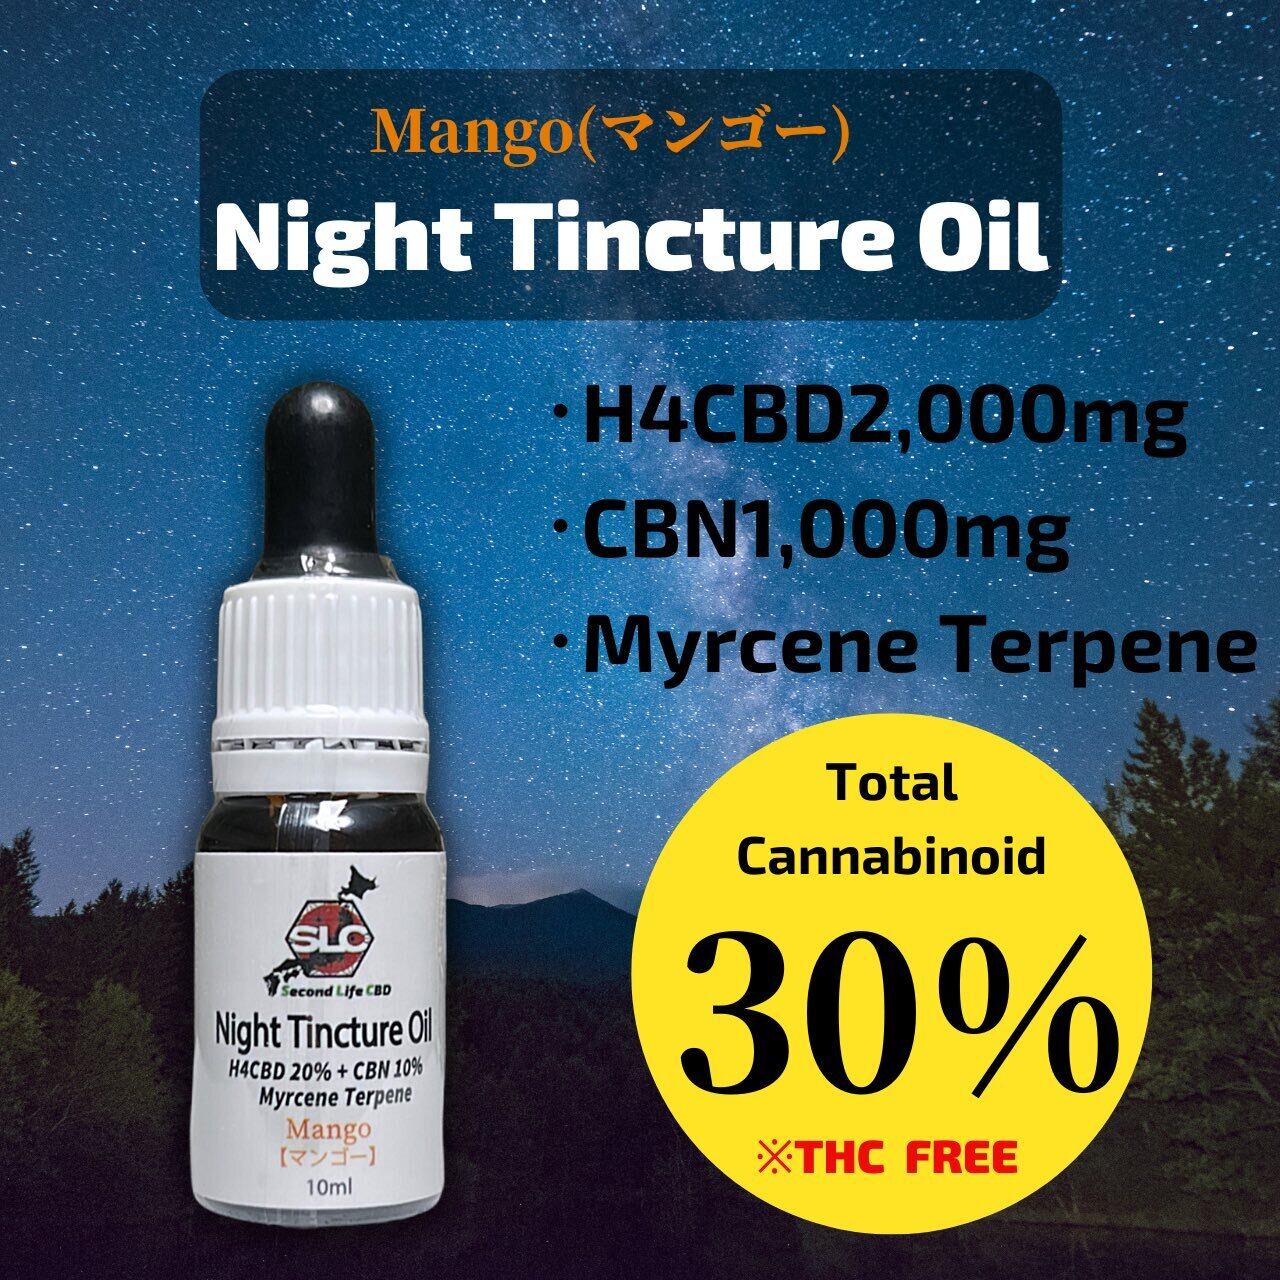 SecondLifeCBD】Night Tincture Oil 30% 10ml【マンゴーフレーバー